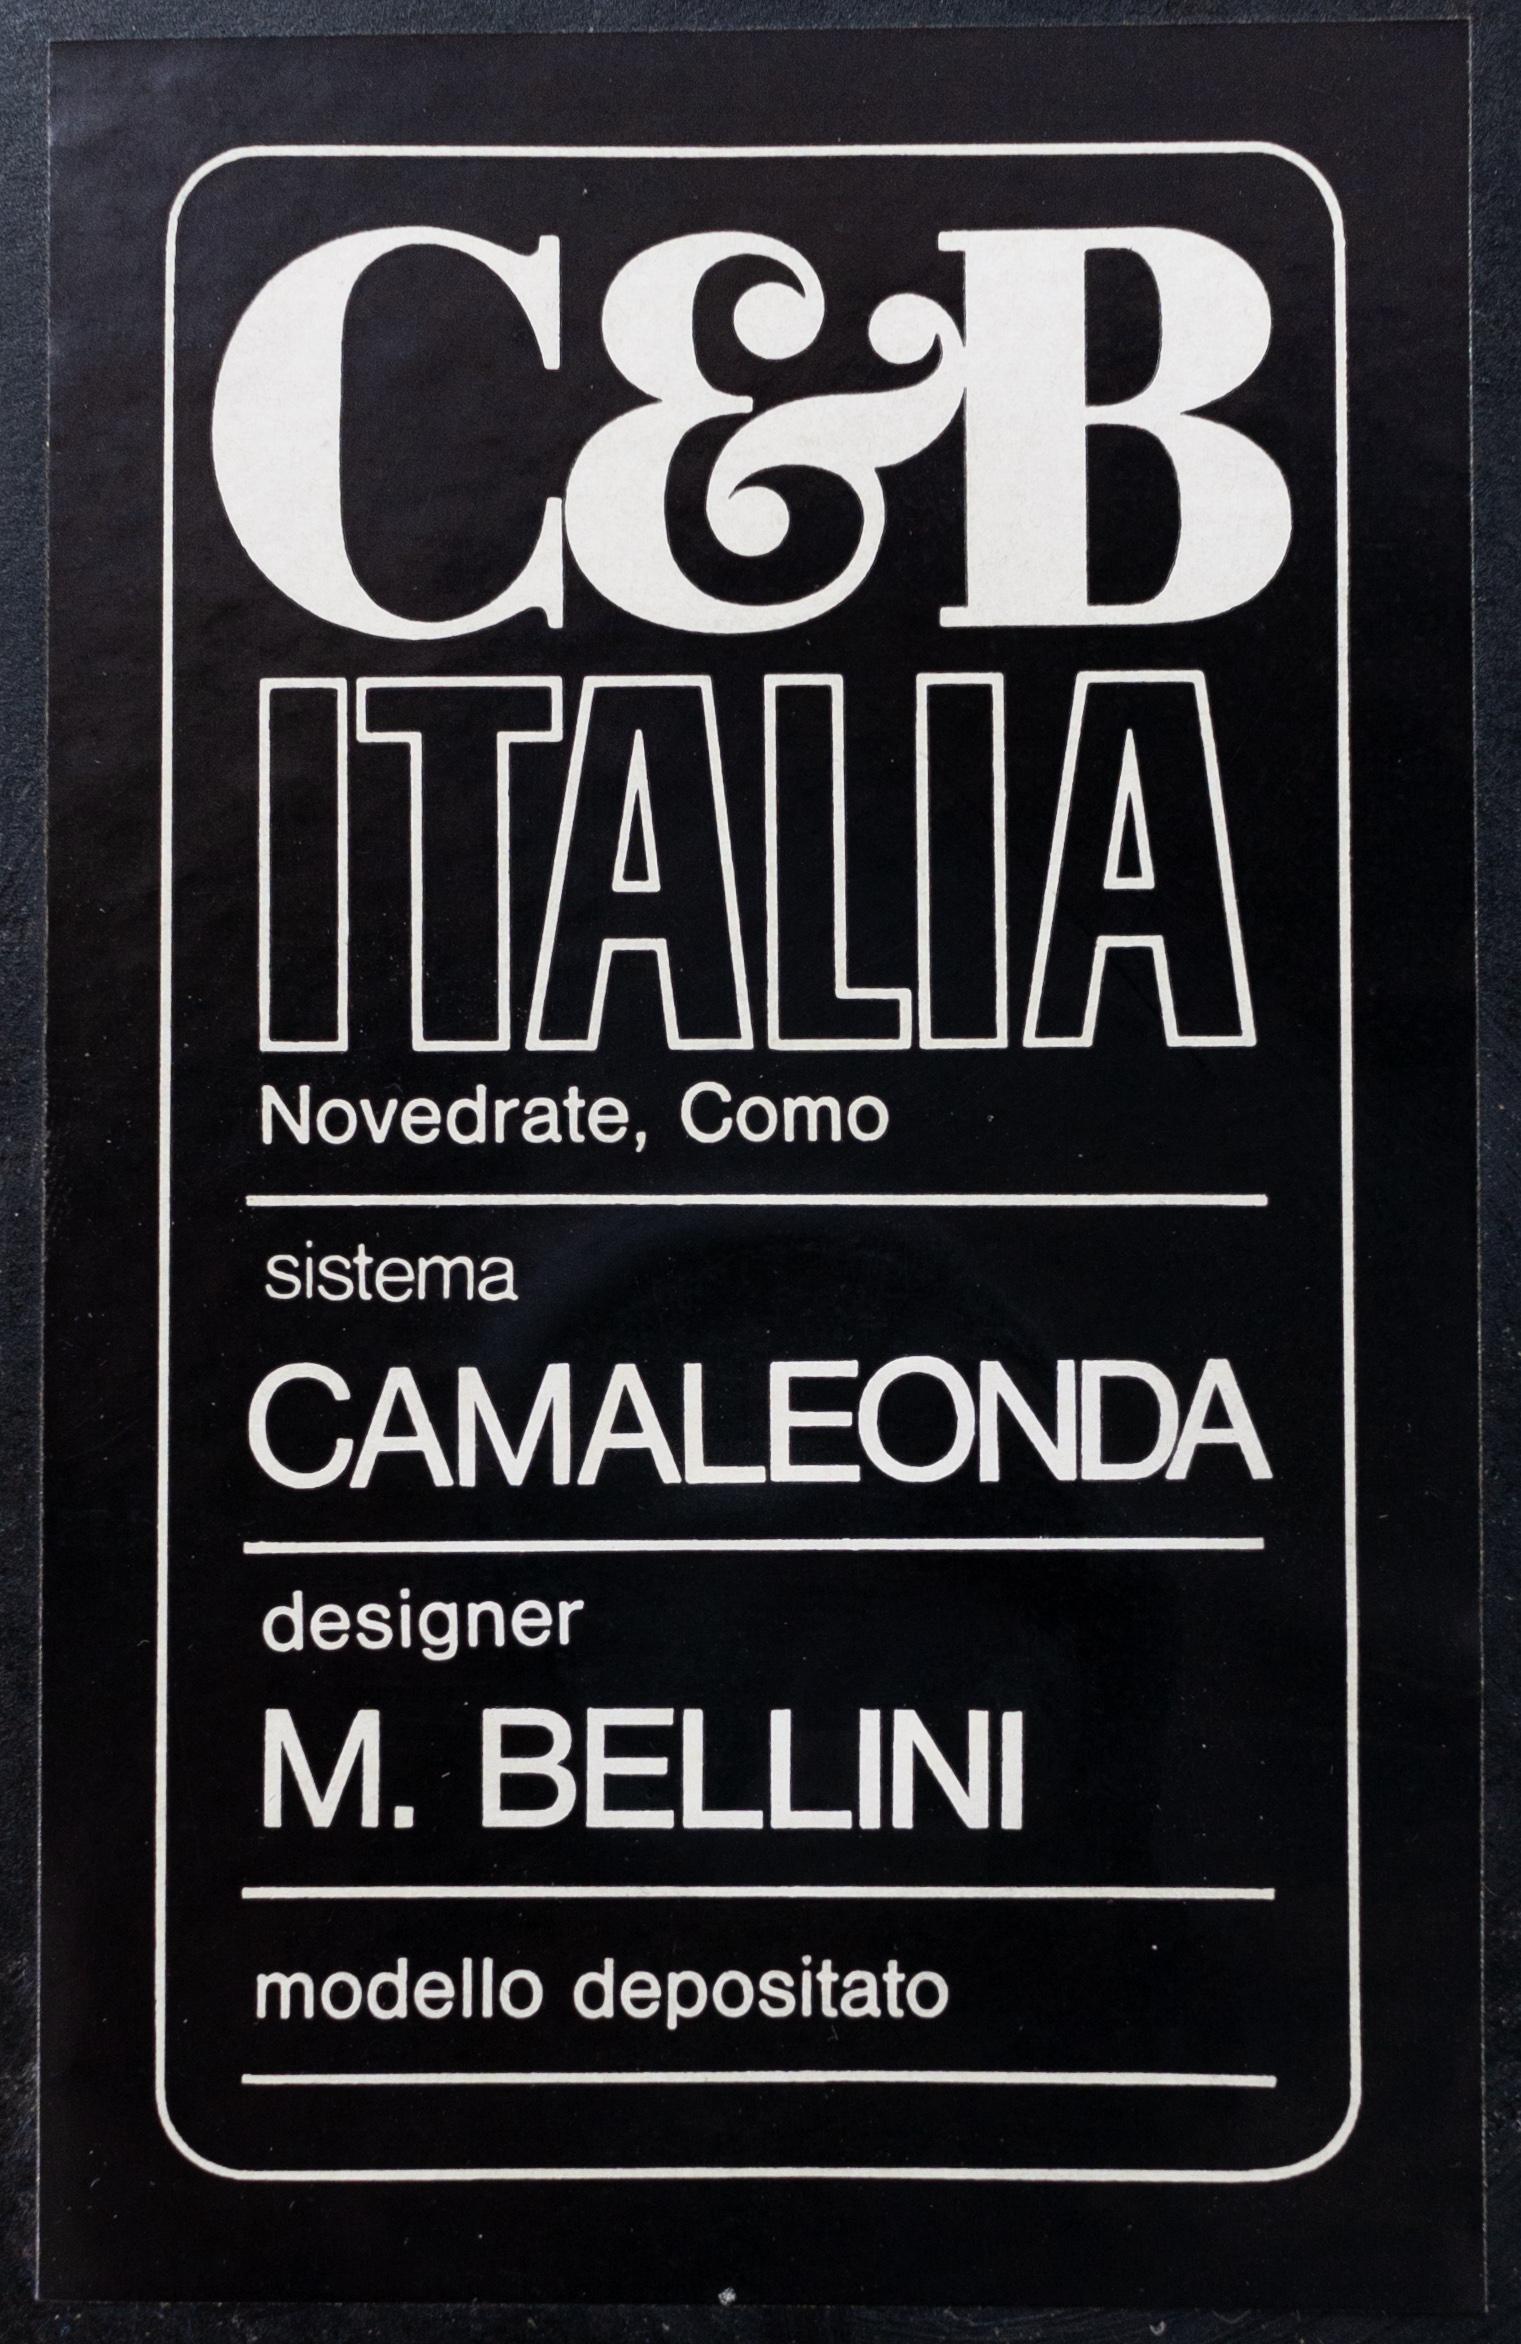 Modular Camaleonda sofa by Mario Bellini, C&B, 1971 6